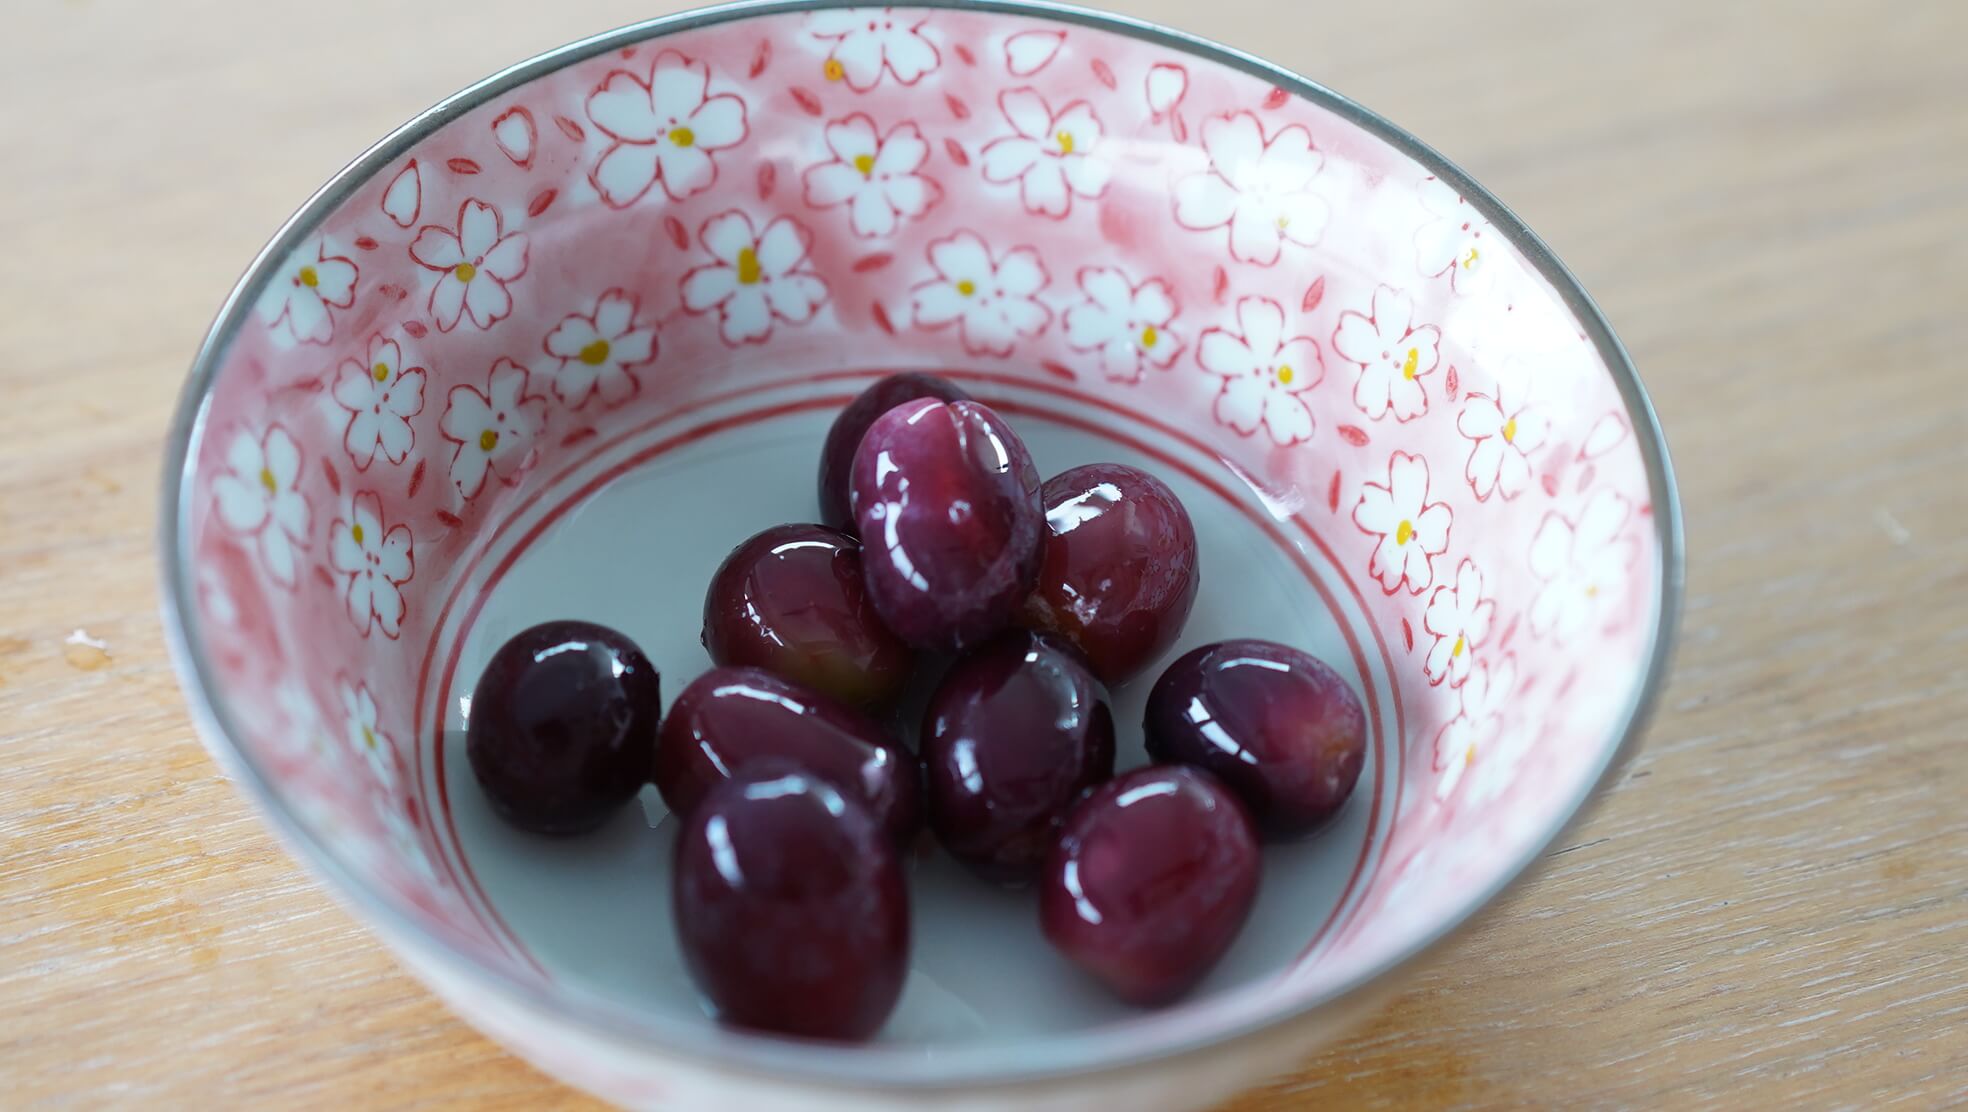 イオンの冷凍食品フルーツ「皮ごと食べられるぶどう」を皿に盛りつけた写真